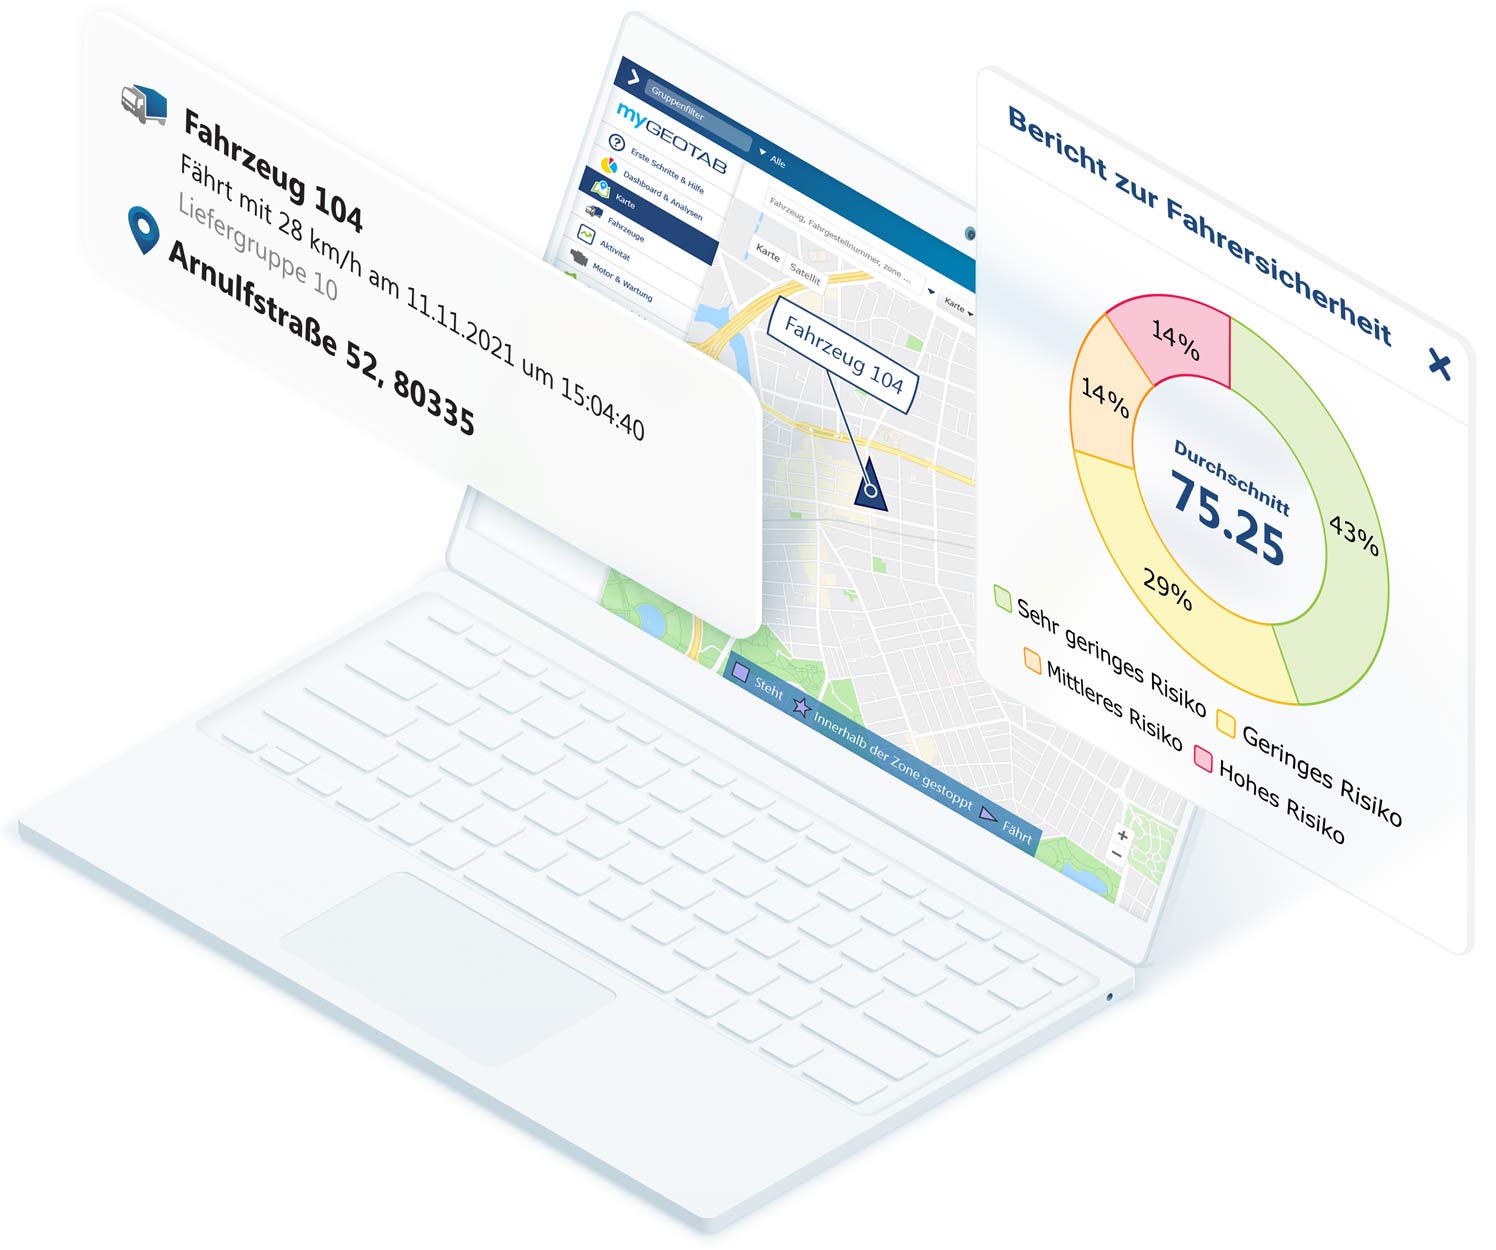 Weißer Laptop mit MyGeotab-Karte mit Fahrzeugdaten und Berichtsbogen zu Fahrersicherheit über dem Bildschirm